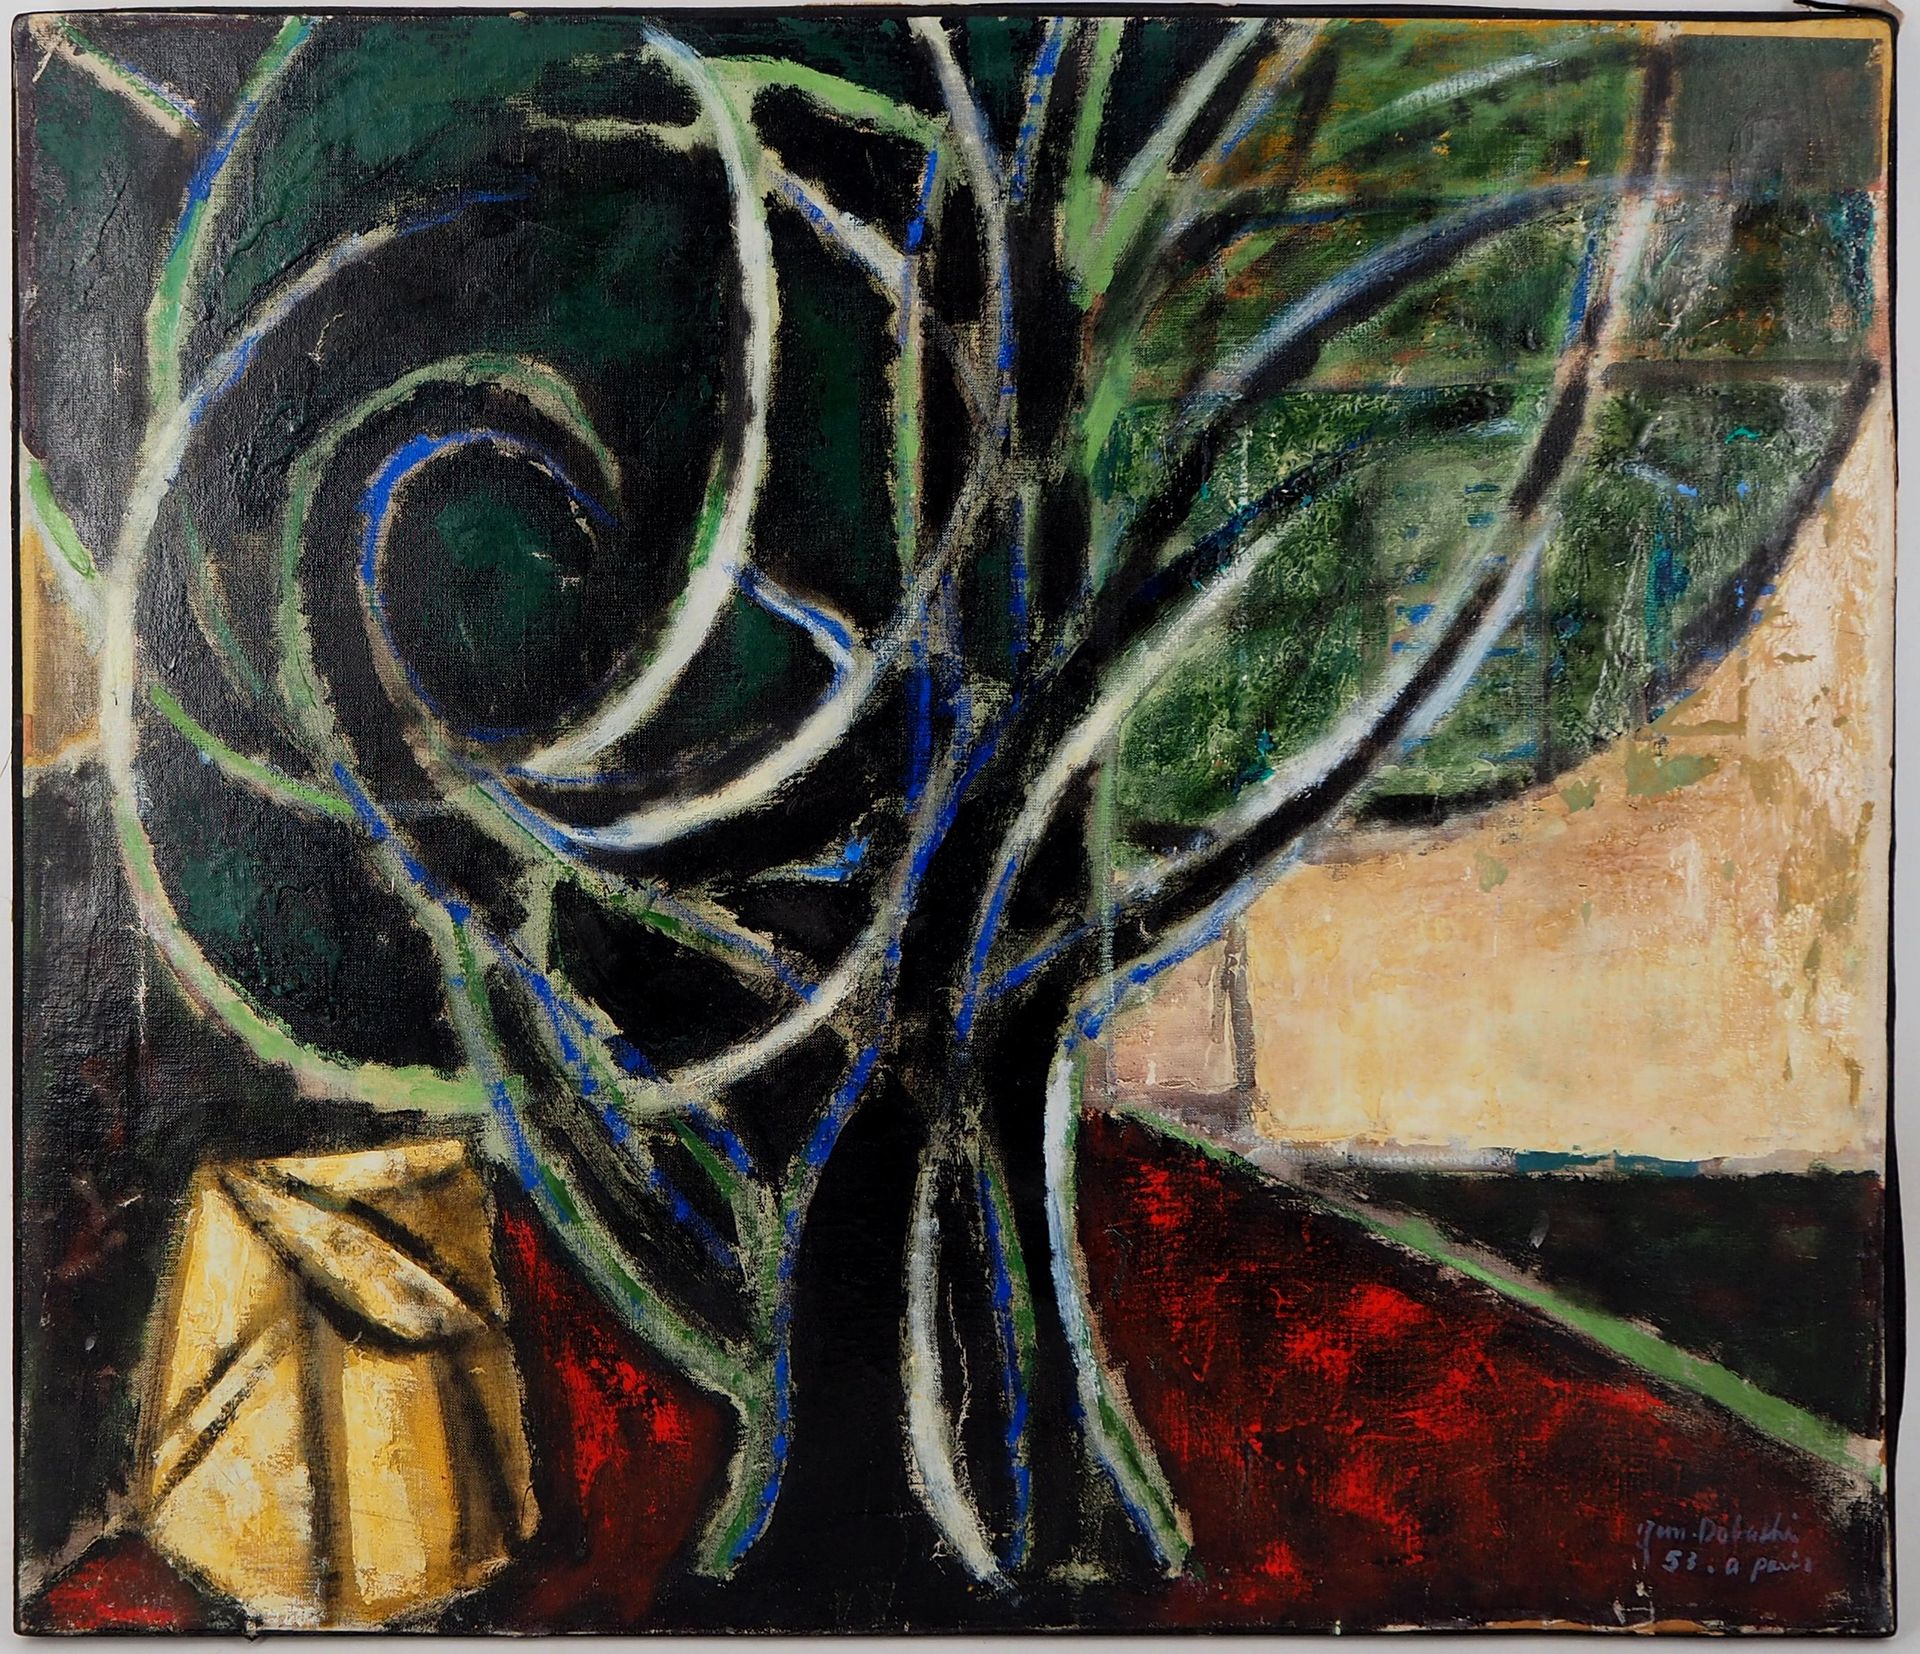 Jun DOBASHI 道桥淳 (1910-1975)

生命之树》，1953年

布面油画

右下方有签名和日期

画布上60×73厘米

状况非常好



&hellip;